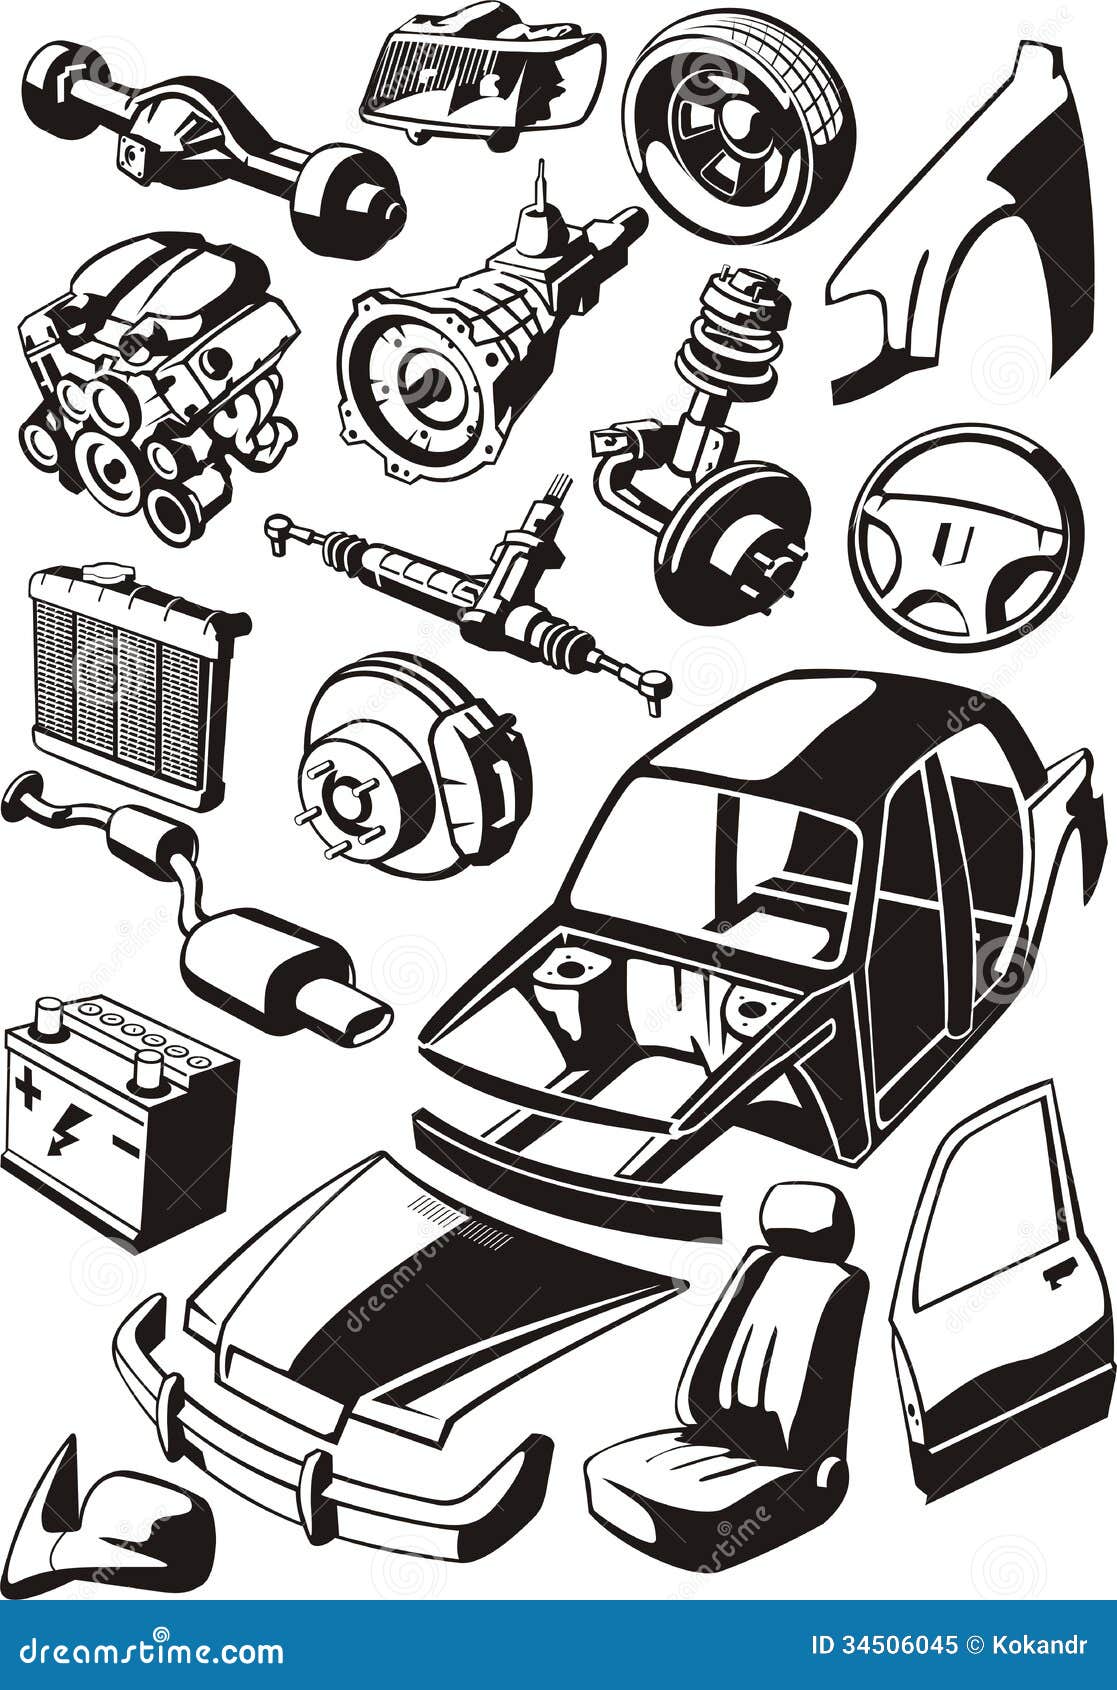 clipart car parts - photo #1